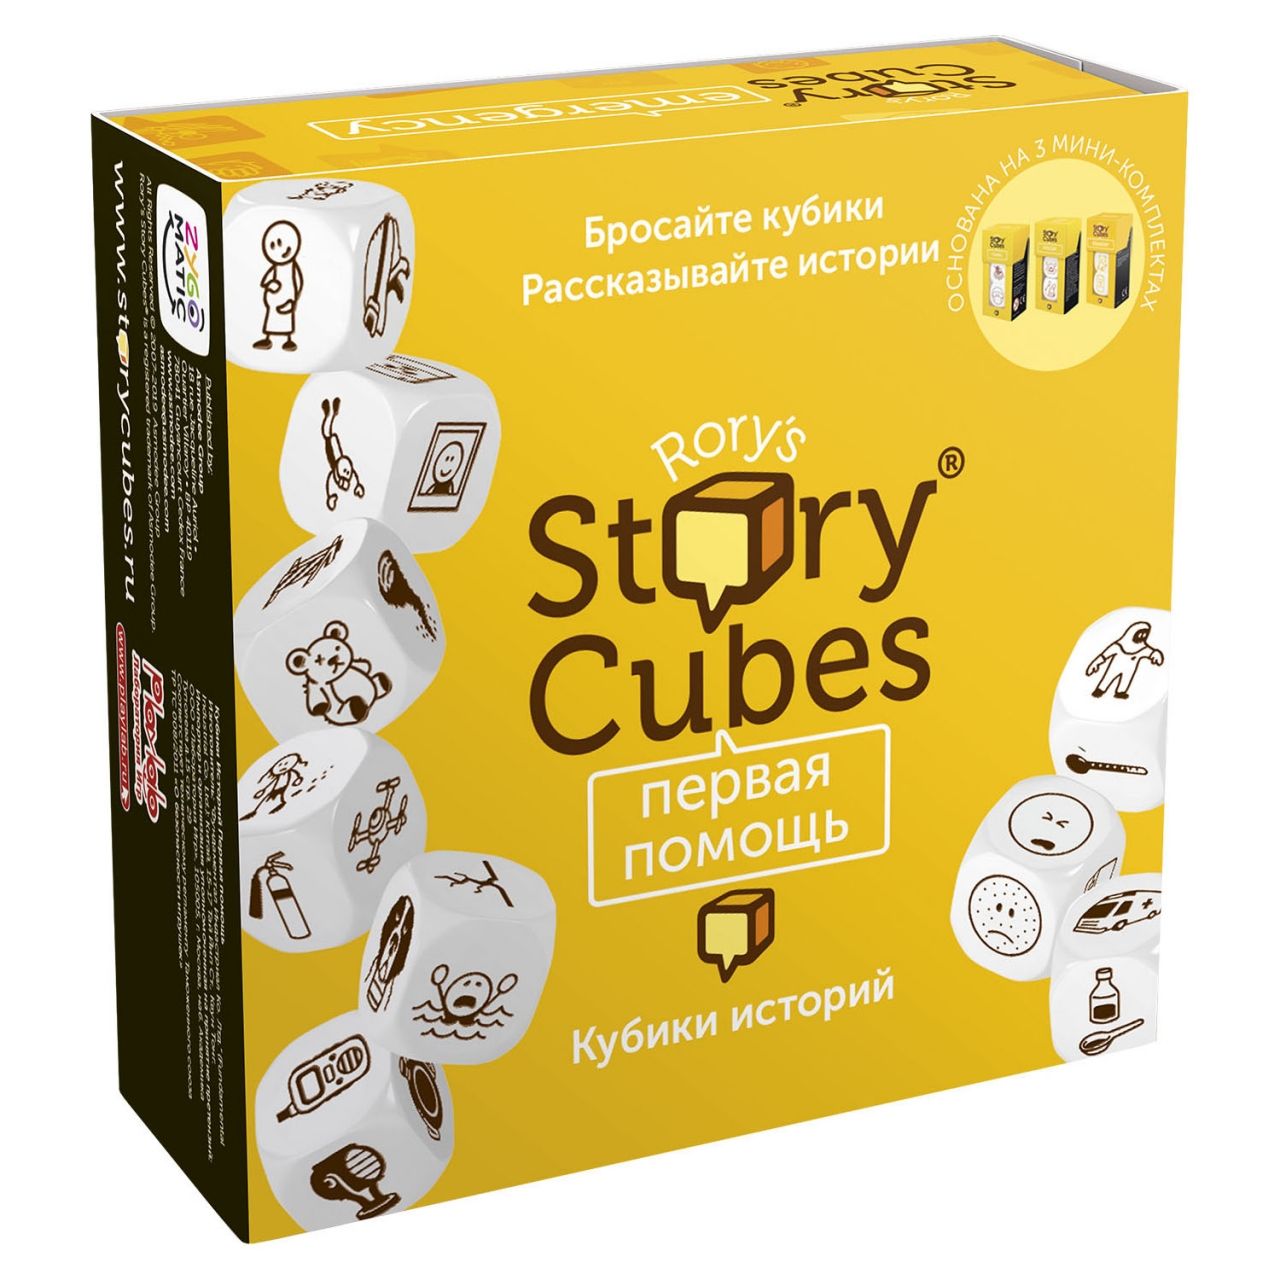 Настольная игра RORYS STORY CUBES RSC32 кубики историй Первая помощь rubiks кубики историй действия